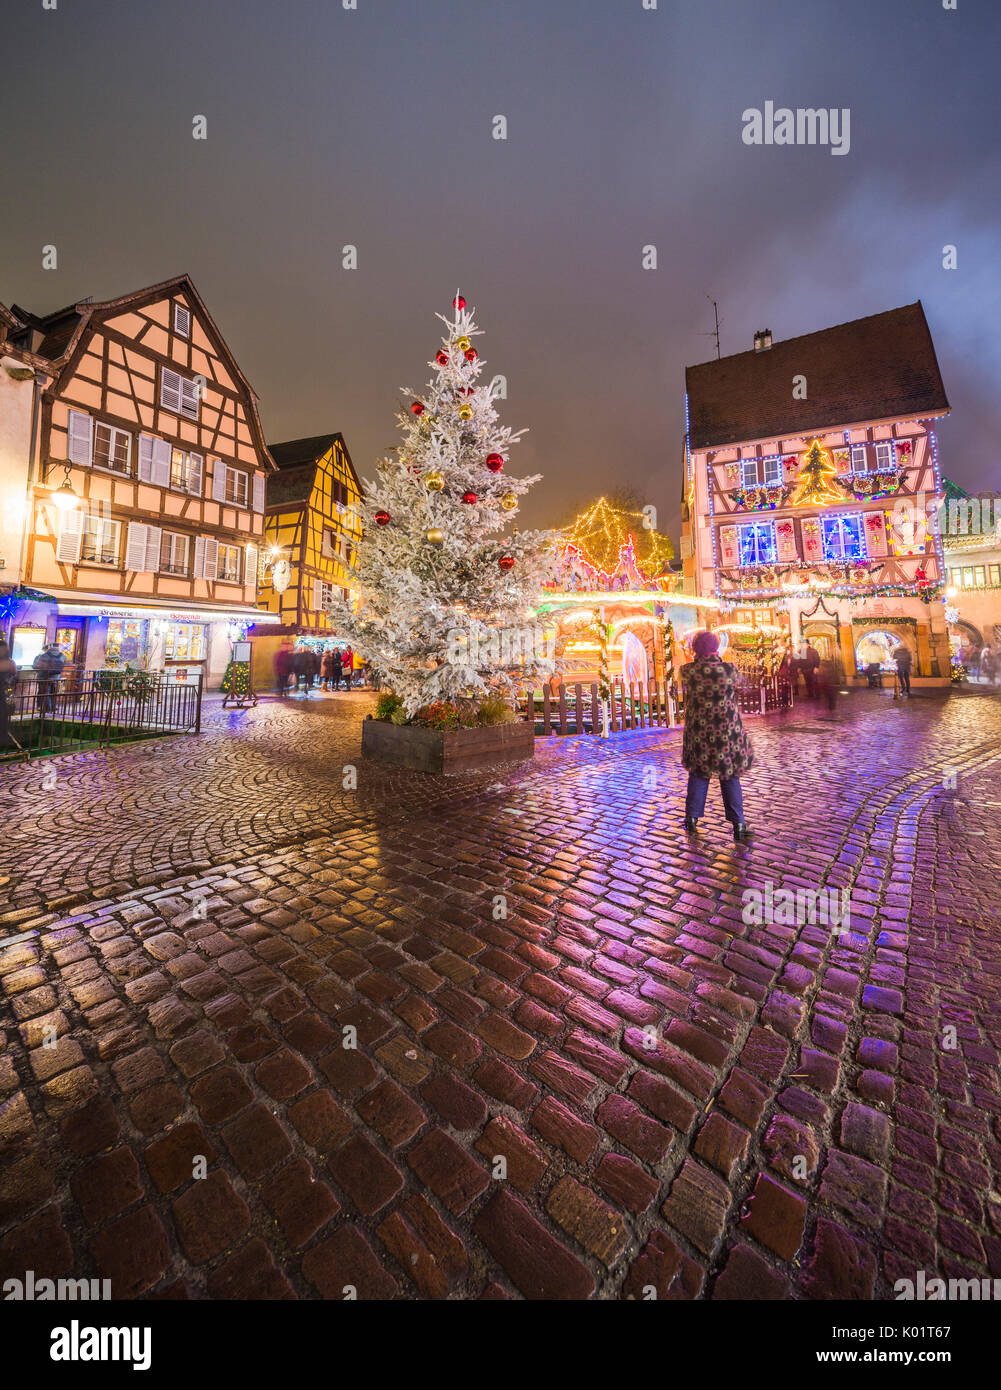 Typische Häuser, angereichert mit Weihnachtsschmuck und Lichter in der Abenddämmerung Abteilung in Colmar, Haut-Rhin Elsass Frankreich Europa Stockfoto